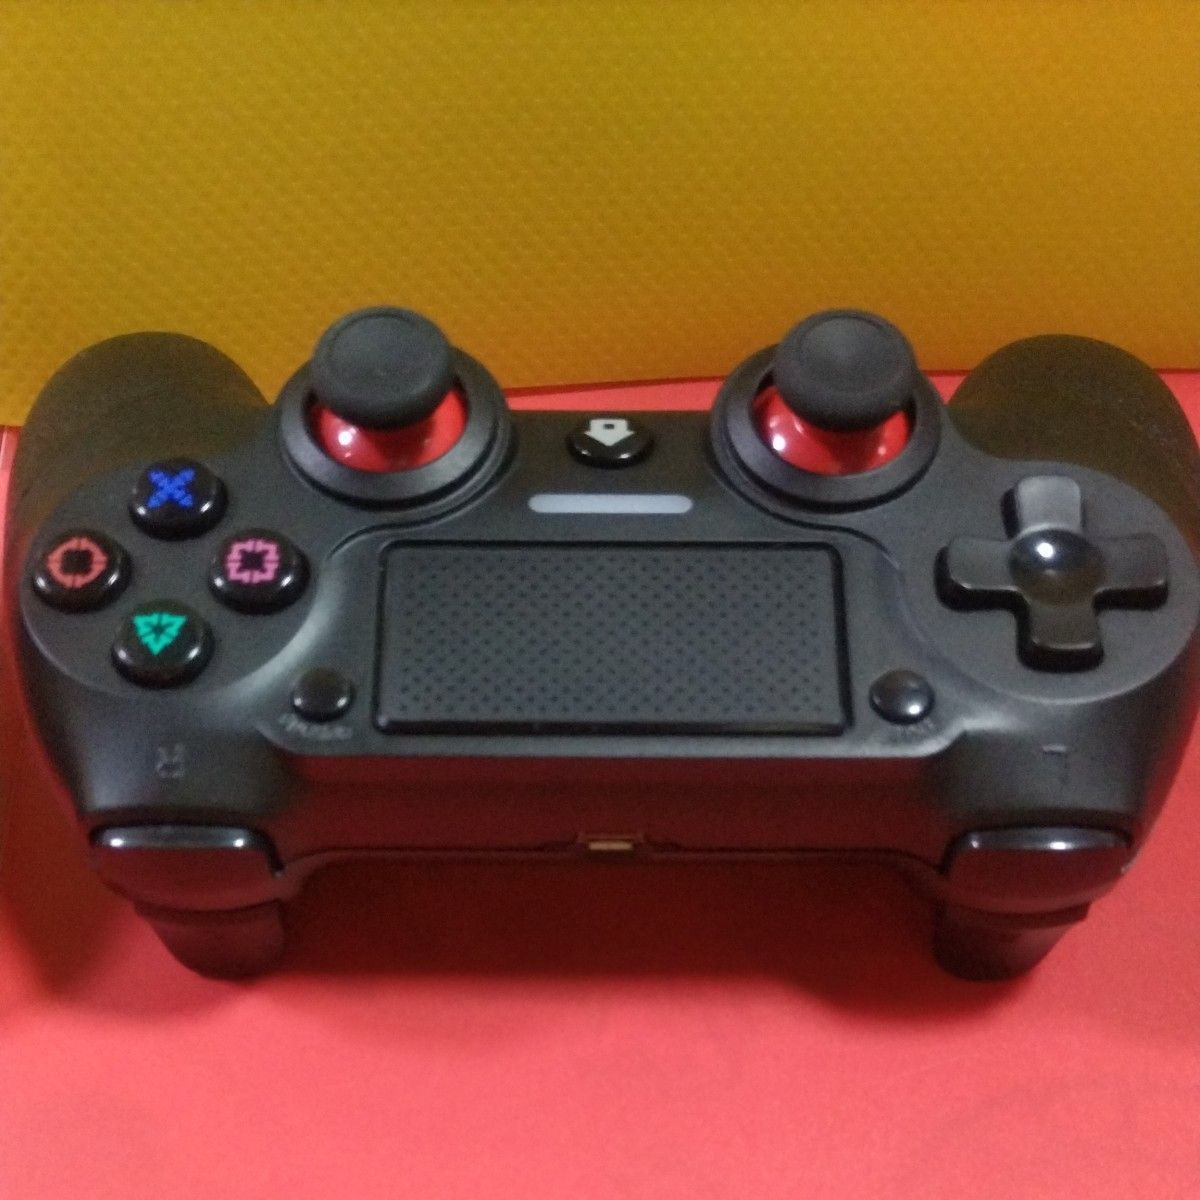 ★【最新バージョン】 PlayStation４ ワイヤレスコントローラー（２個セット）